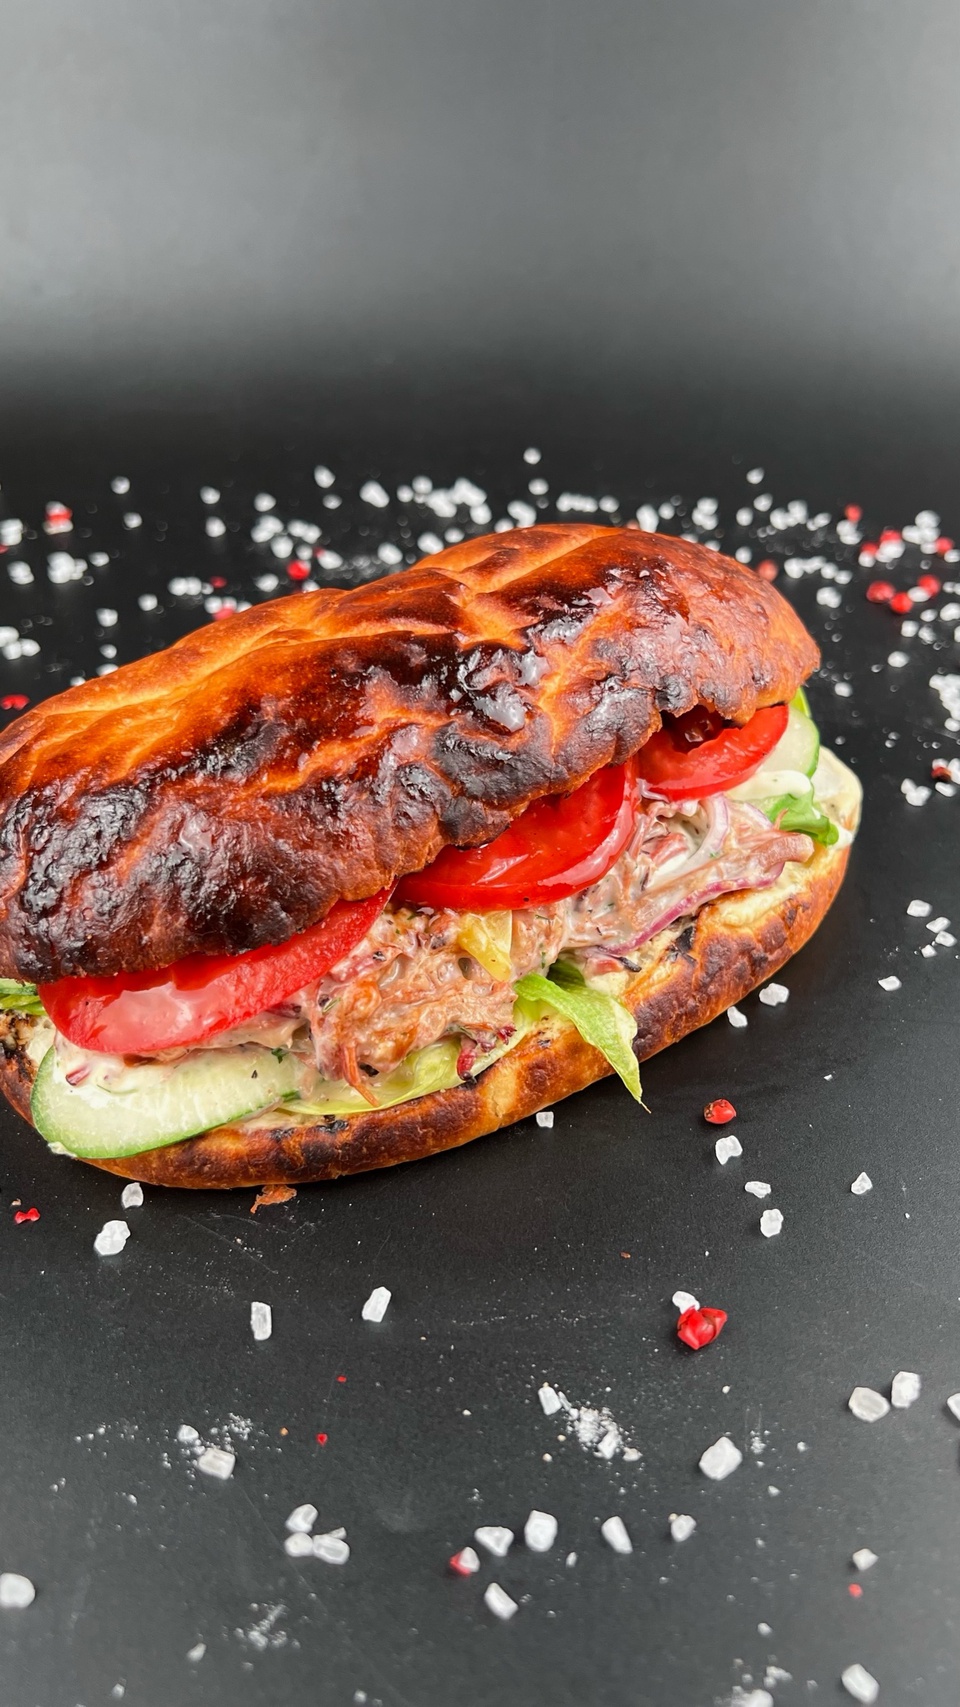 Бургер с рваной свининой из смокера - 340 ₽, заказать онлайн.